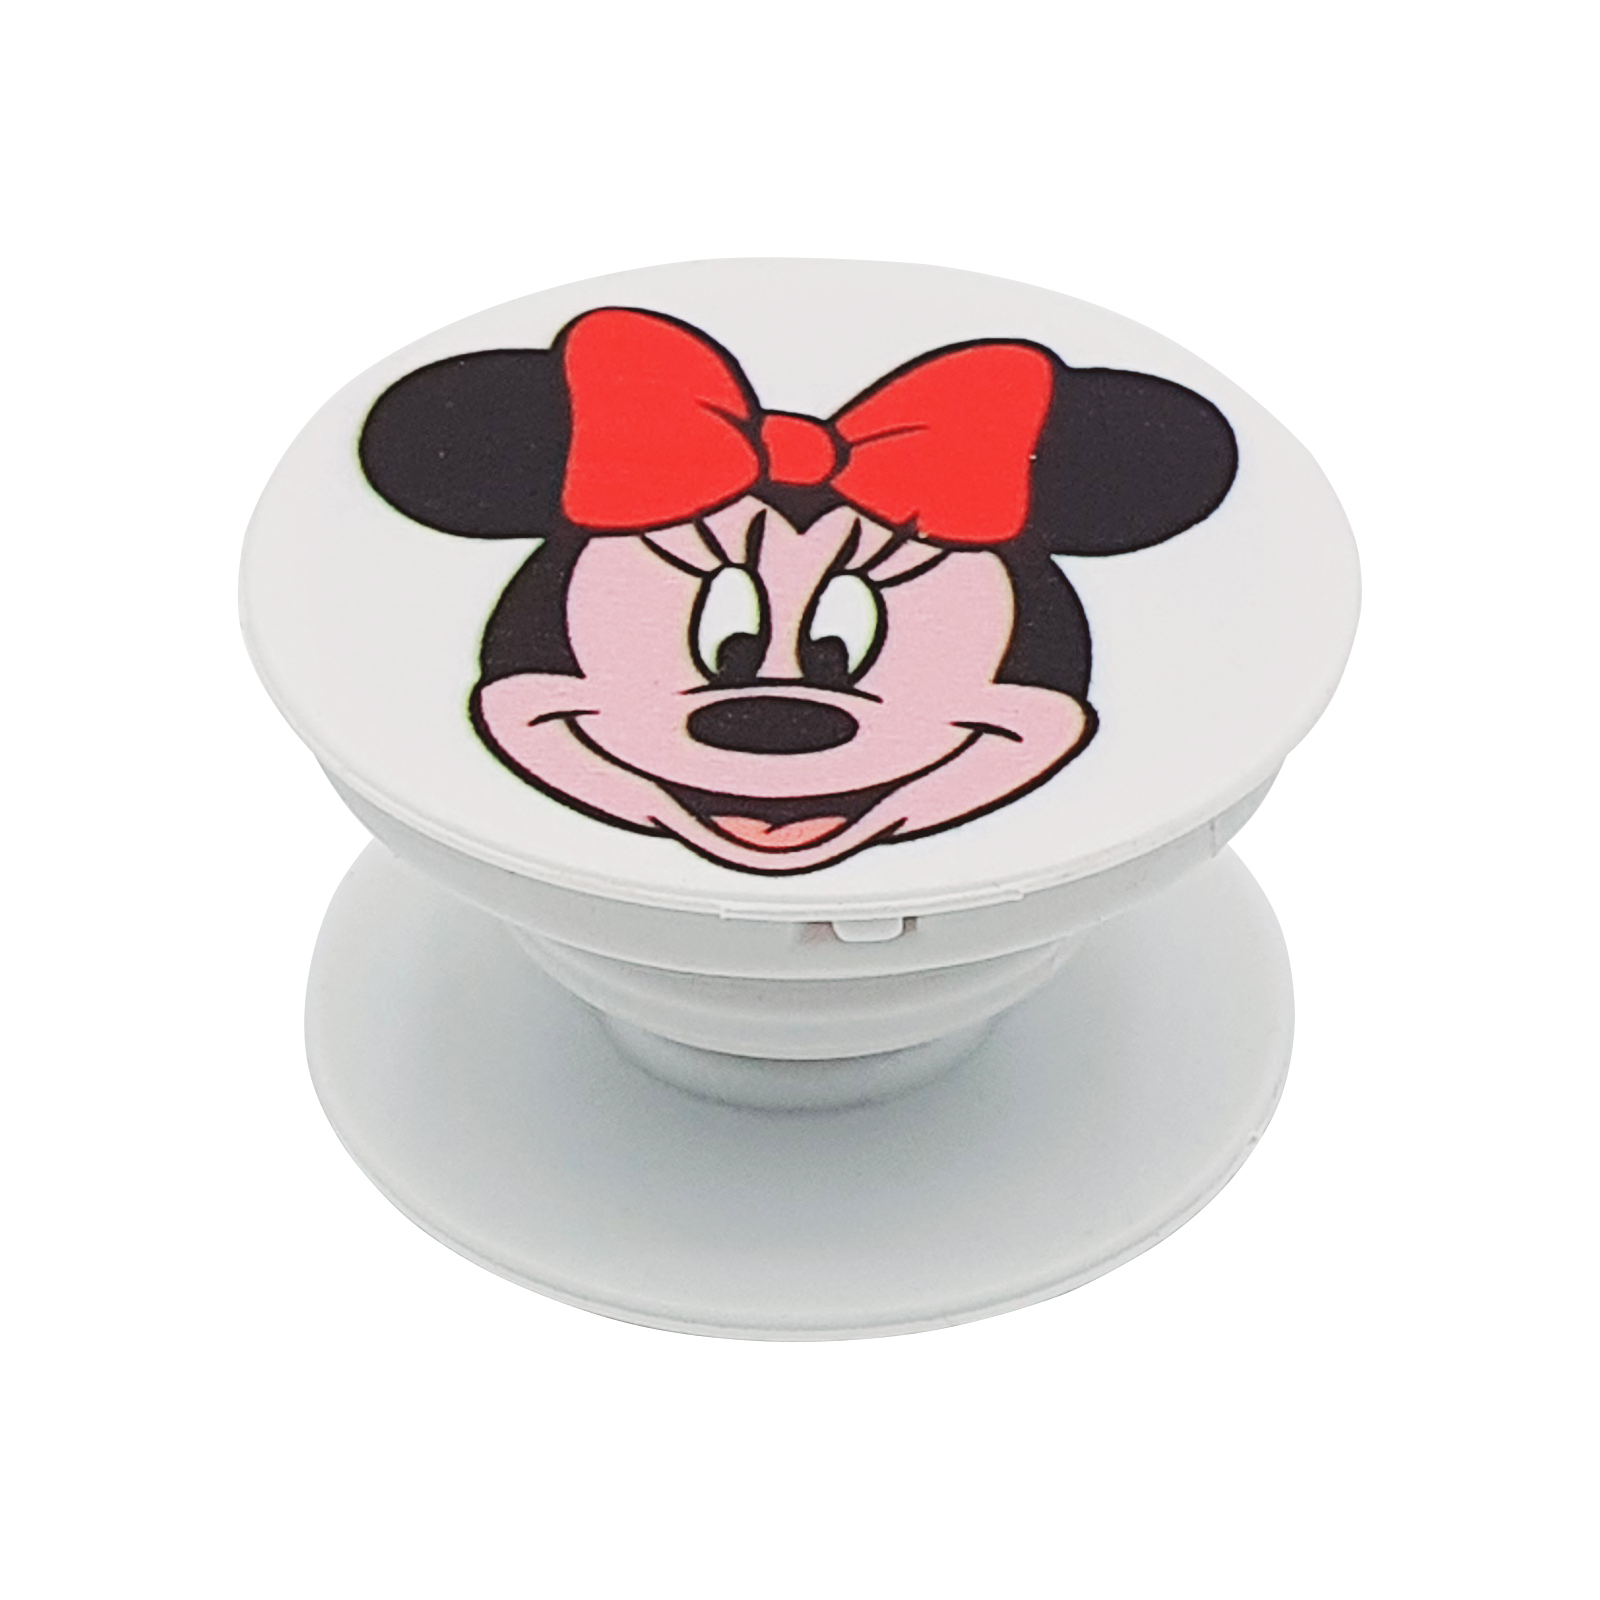 پایه نگهدارنده گوشی موبایل پاپ سوکت مدل Minnie Mouse-1